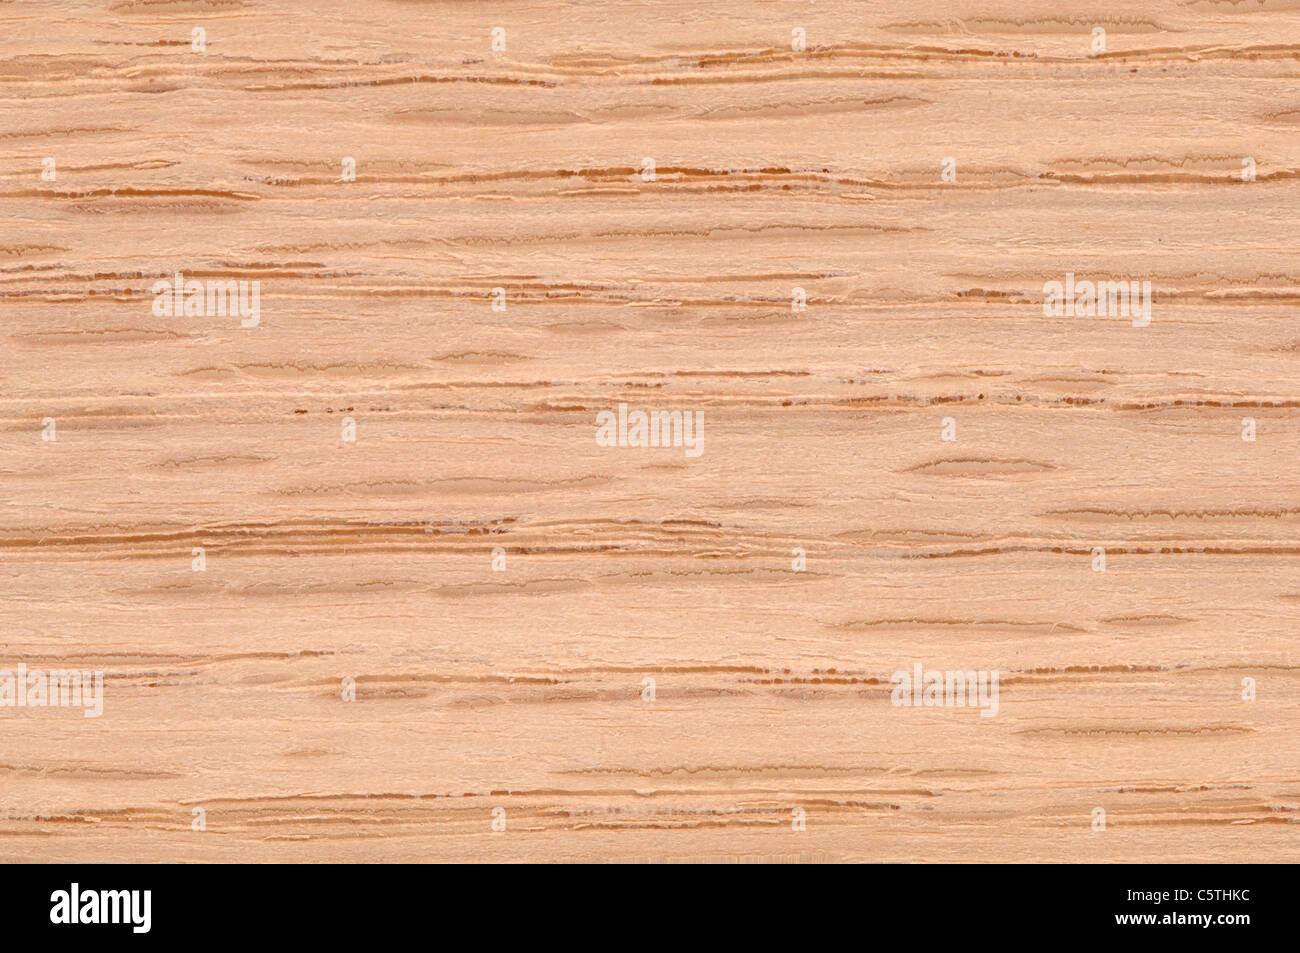 Superficie de madera, el roble rojo (Quercus rubra) full frame Foto de stock